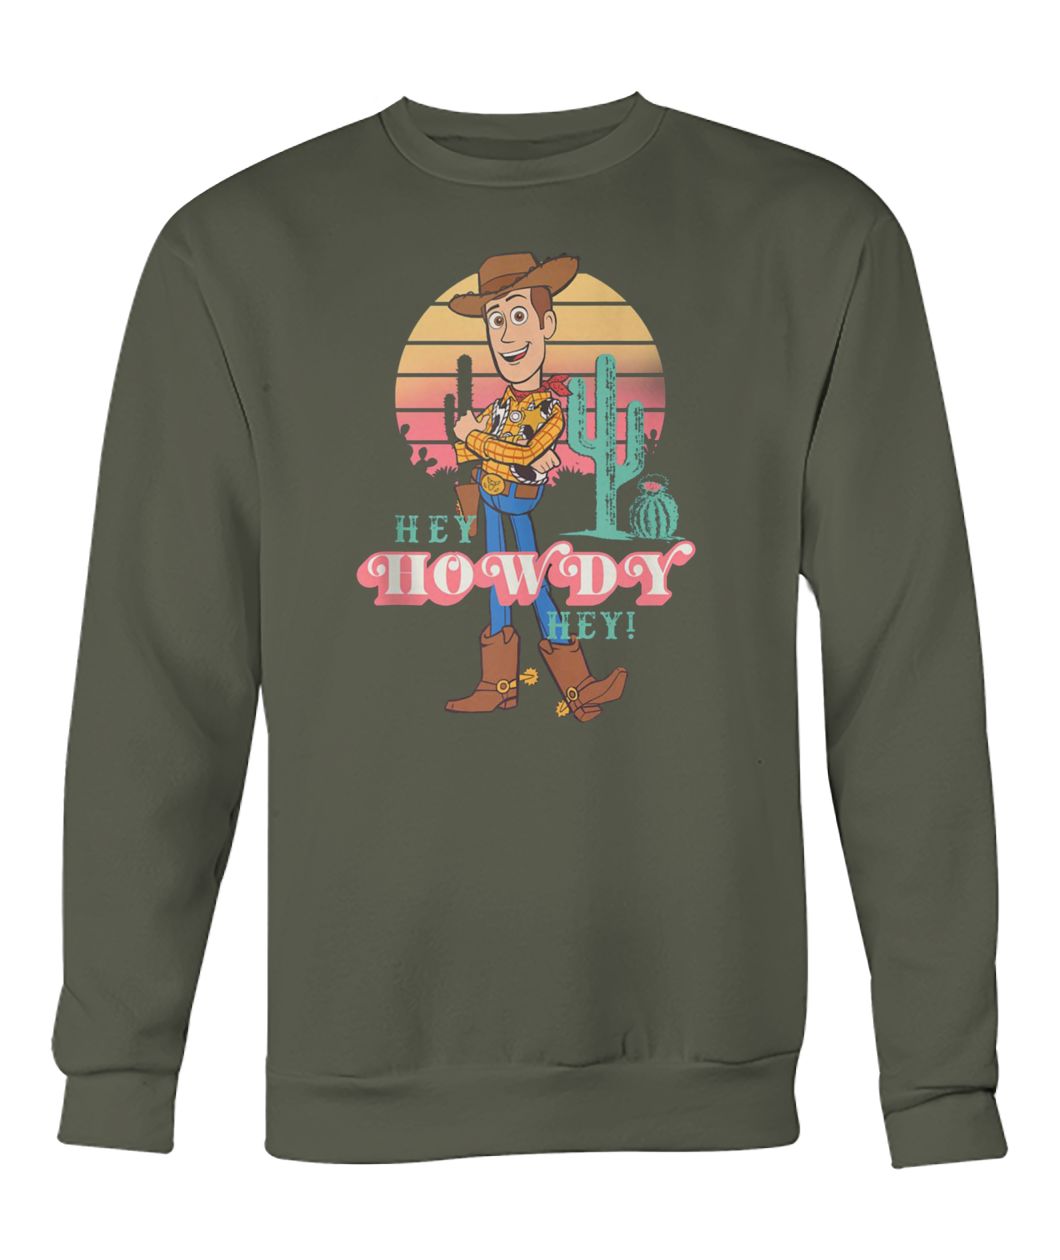 Disney pixar toy story 4 sheriff woody hey howdy hey crew neck sweatshirt